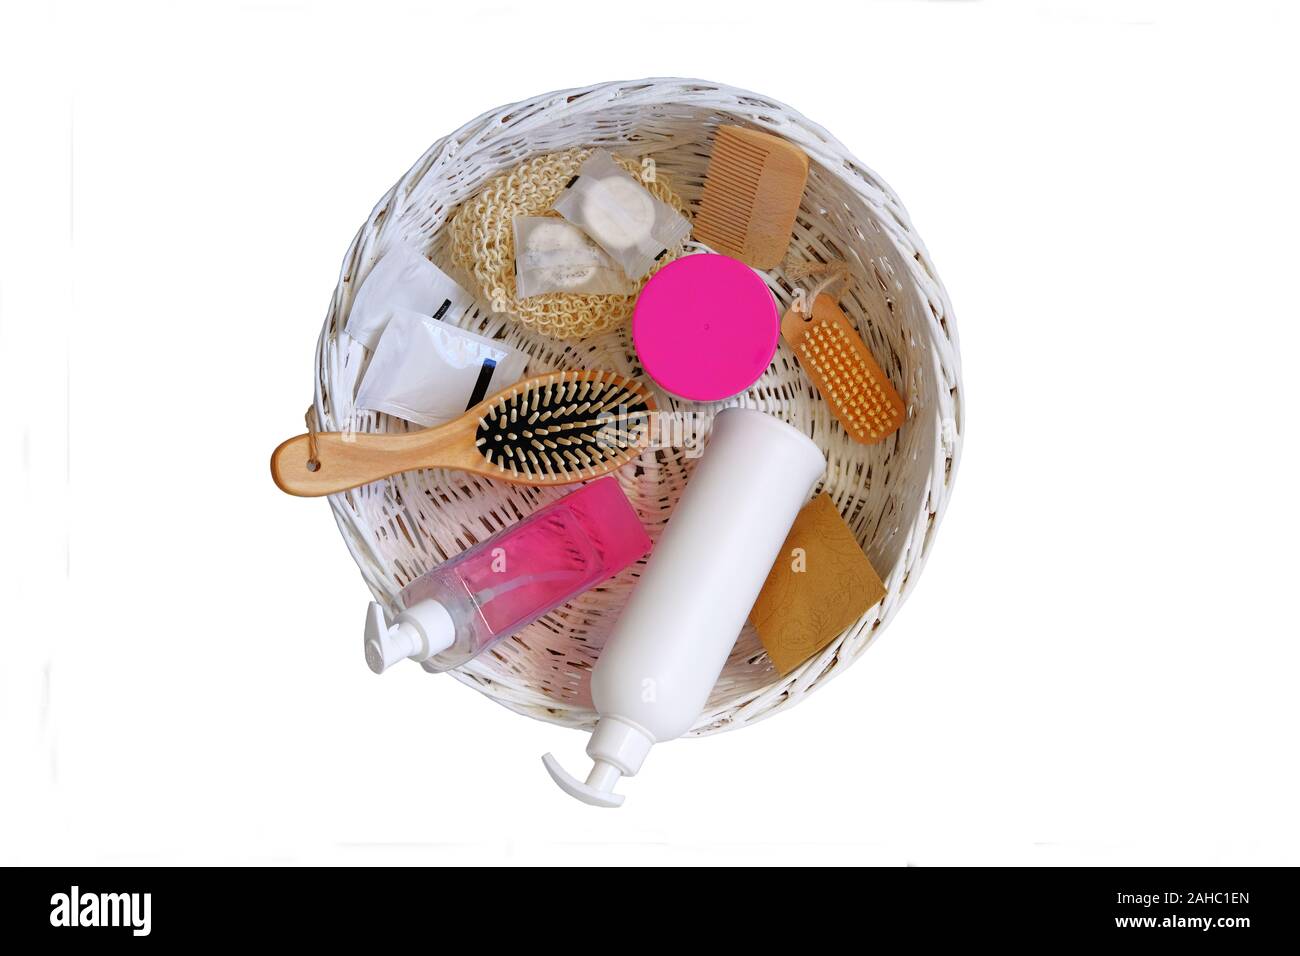 Kosmetik mit natürlichen Inhaltsstoffen in einem weissen Korb. Naturkosmetik Produkte. Auf weissem Hintergrund isolieren. Stockfoto